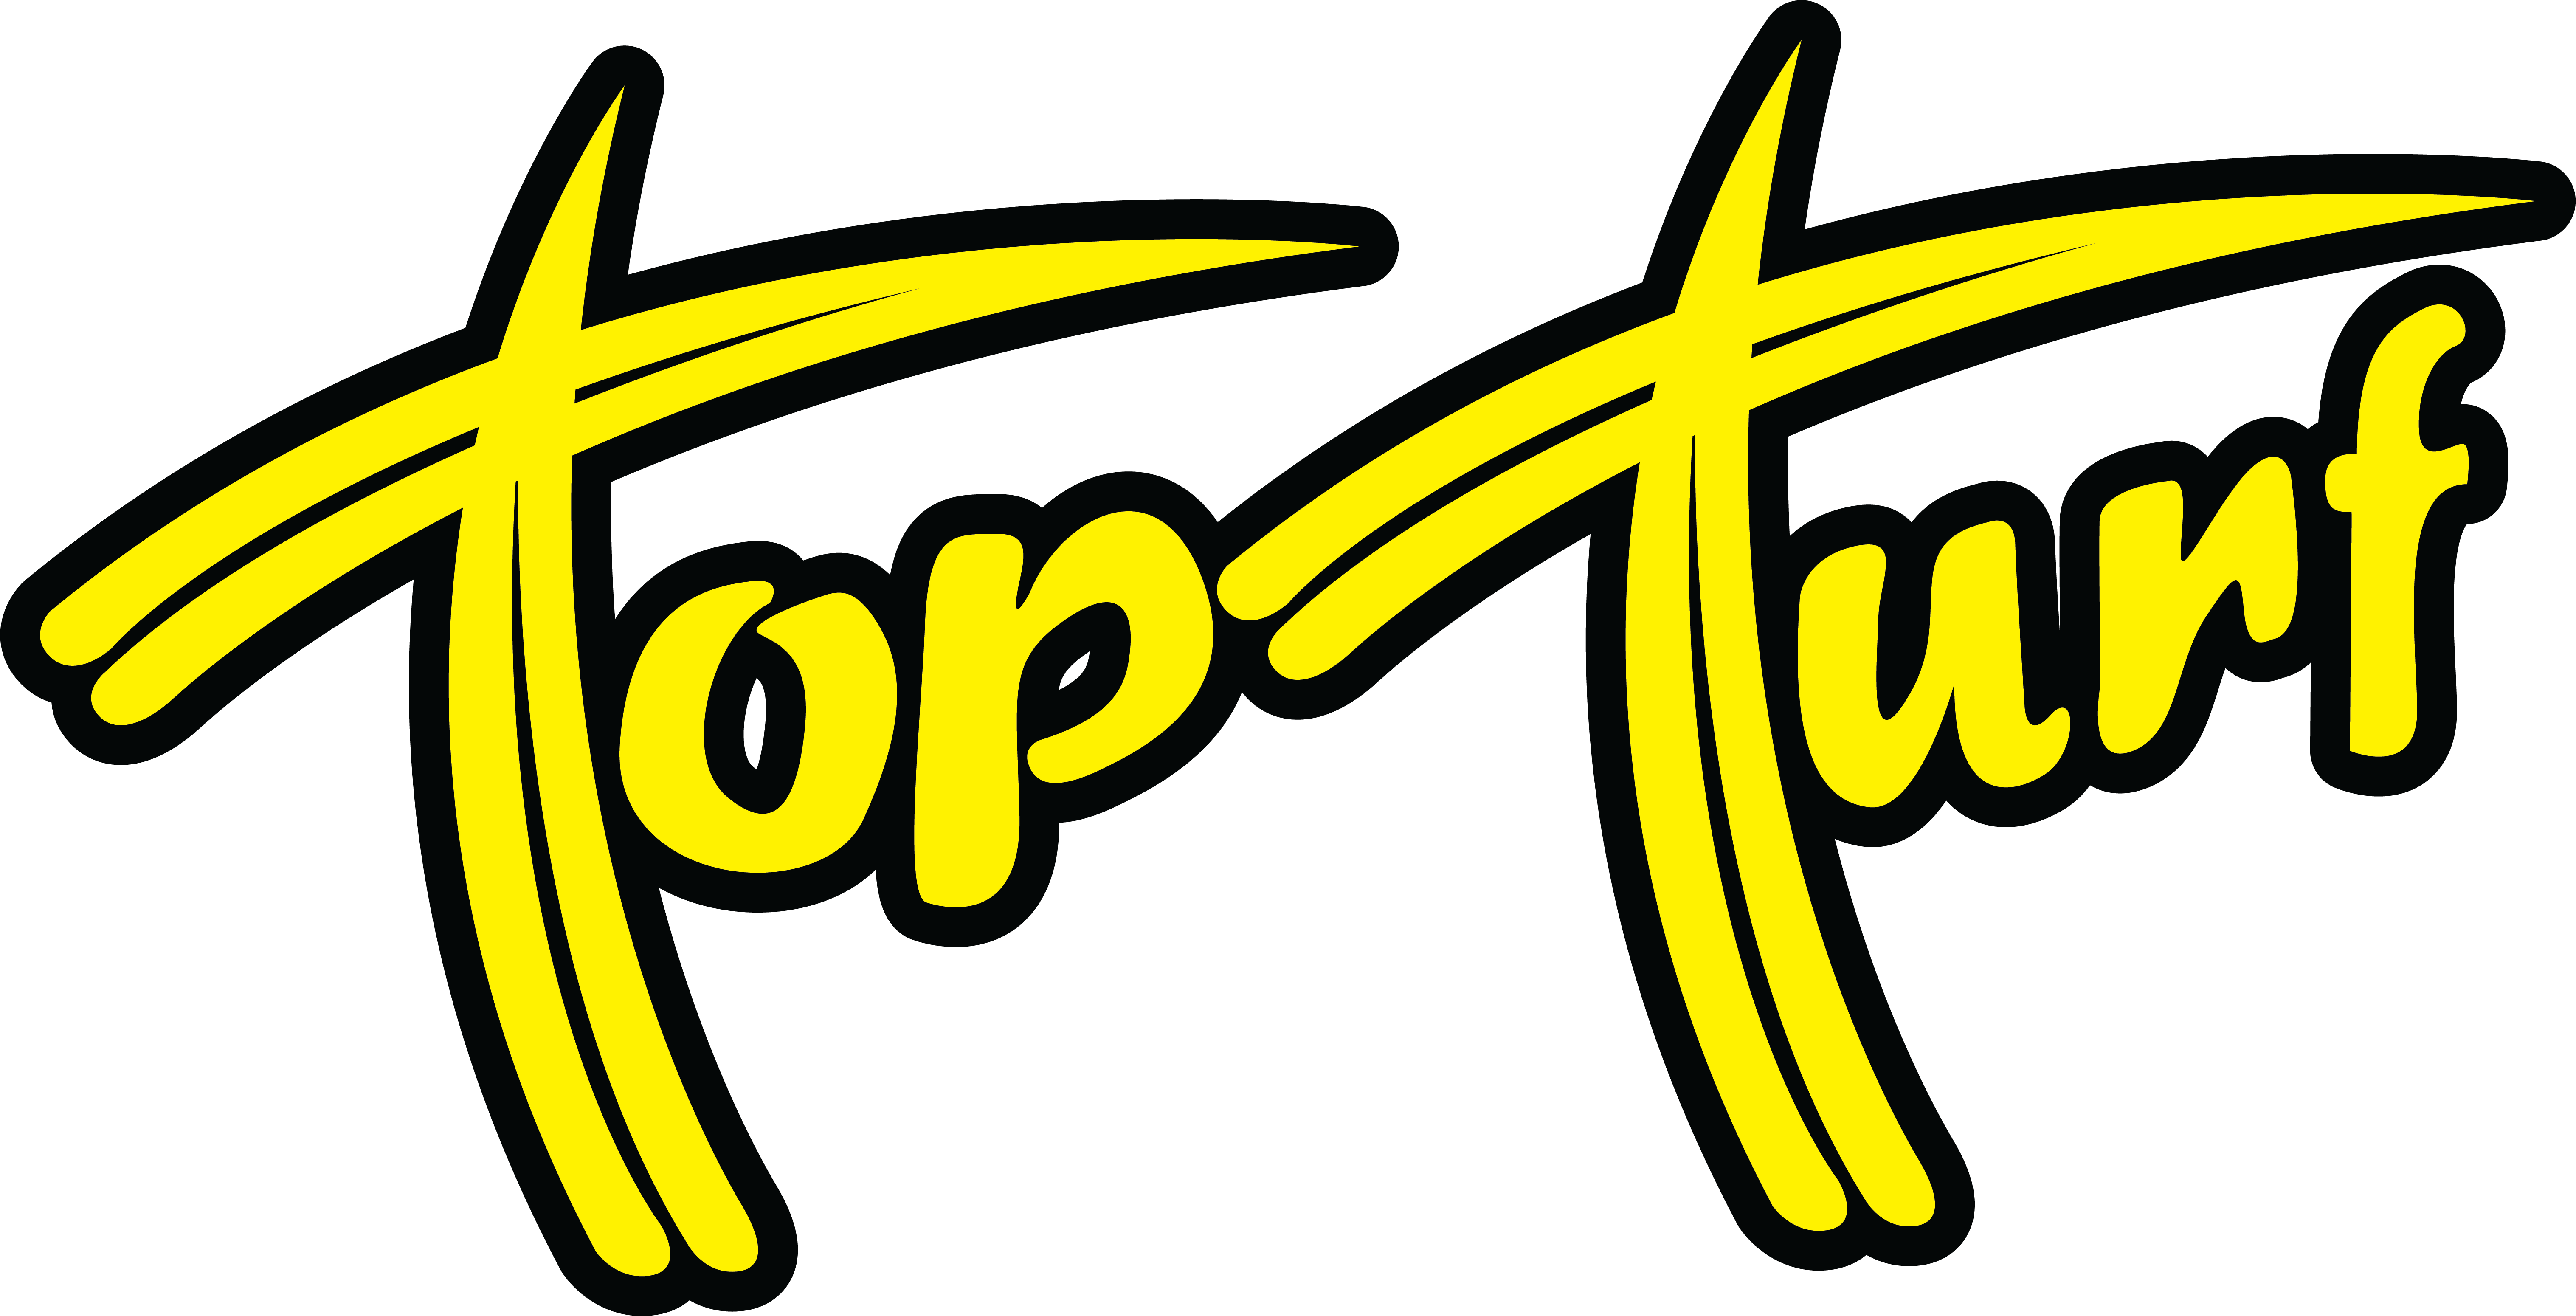 Top Turf logo large R